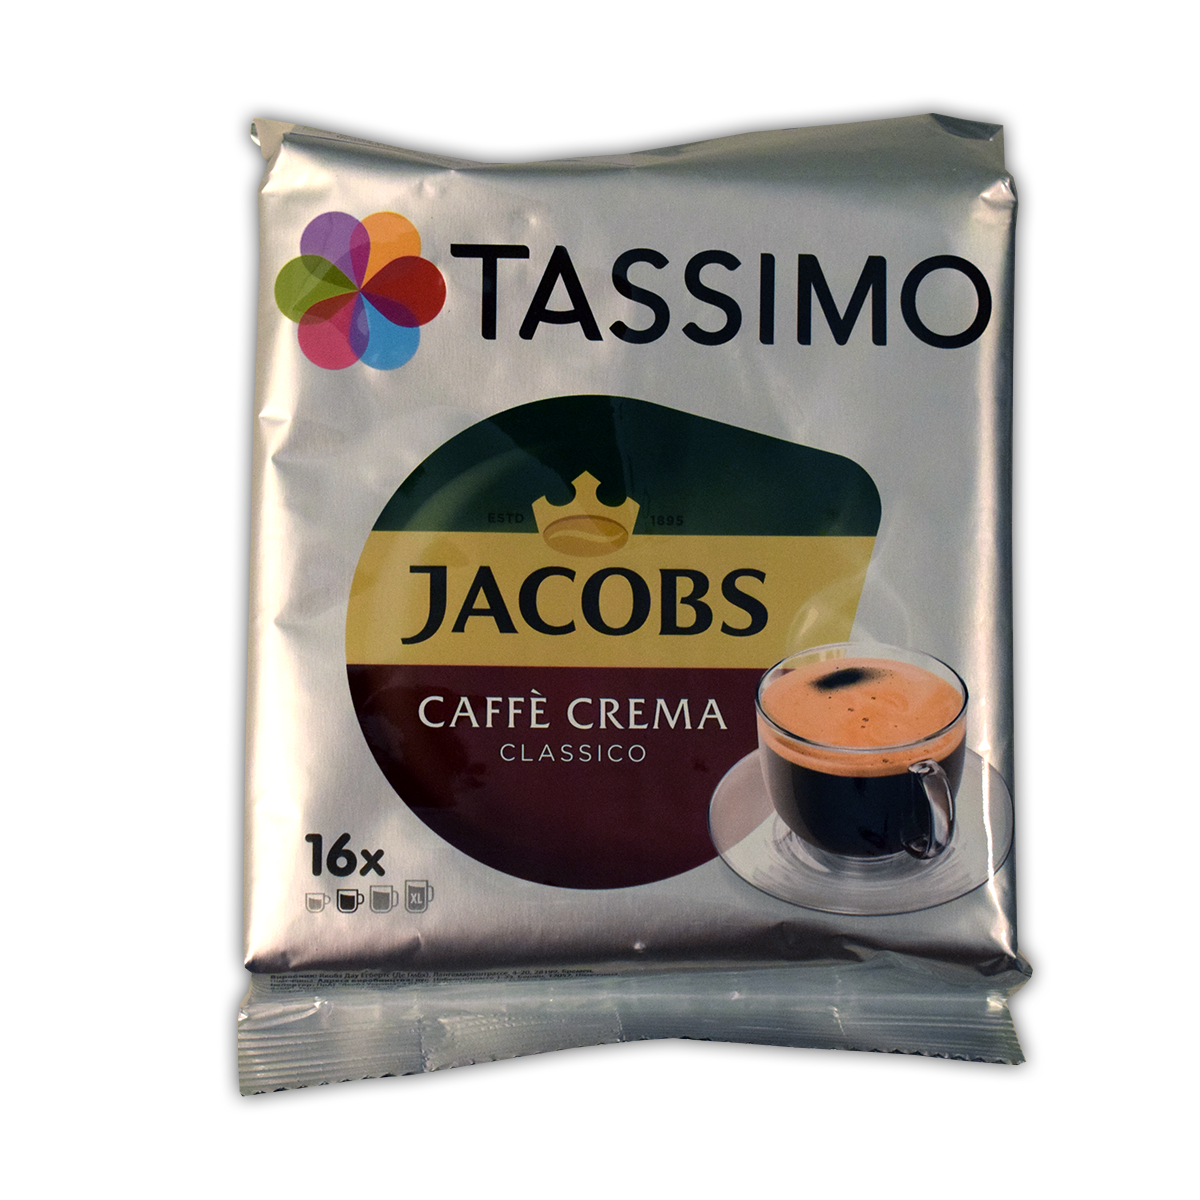 Jacobs Tassimo Cafe Crema Classico 112g